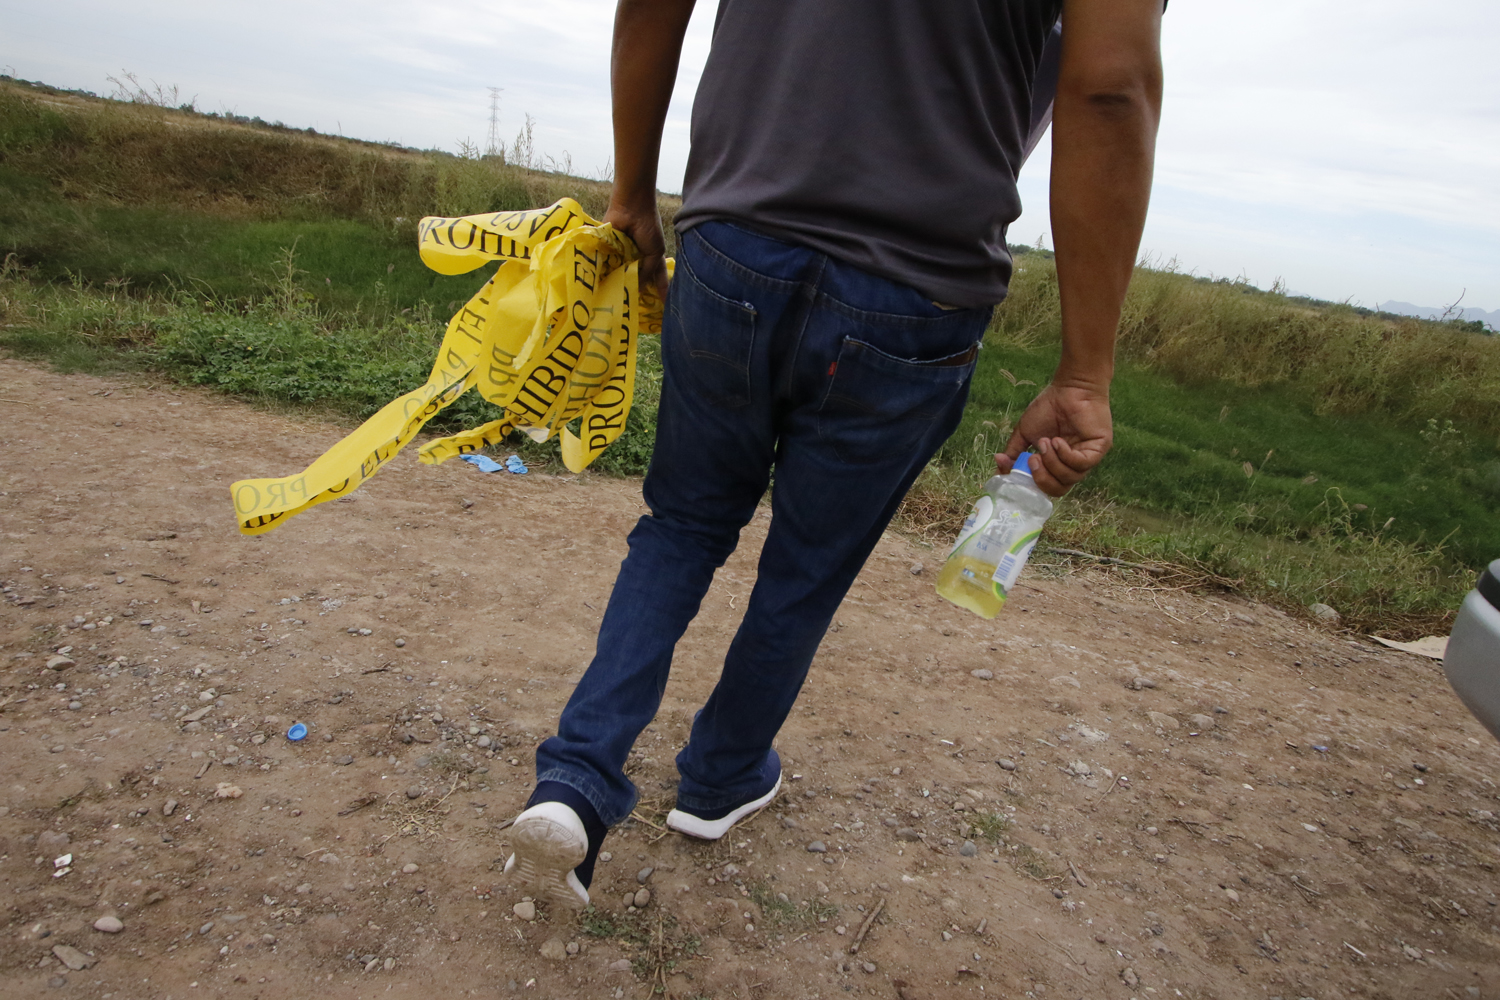  Los empleados de funerarias se encargan de exhumar cuerpos de fosas clandestinas en el norte de Sinaloa. Crédito: Marcos Vizcarra. 